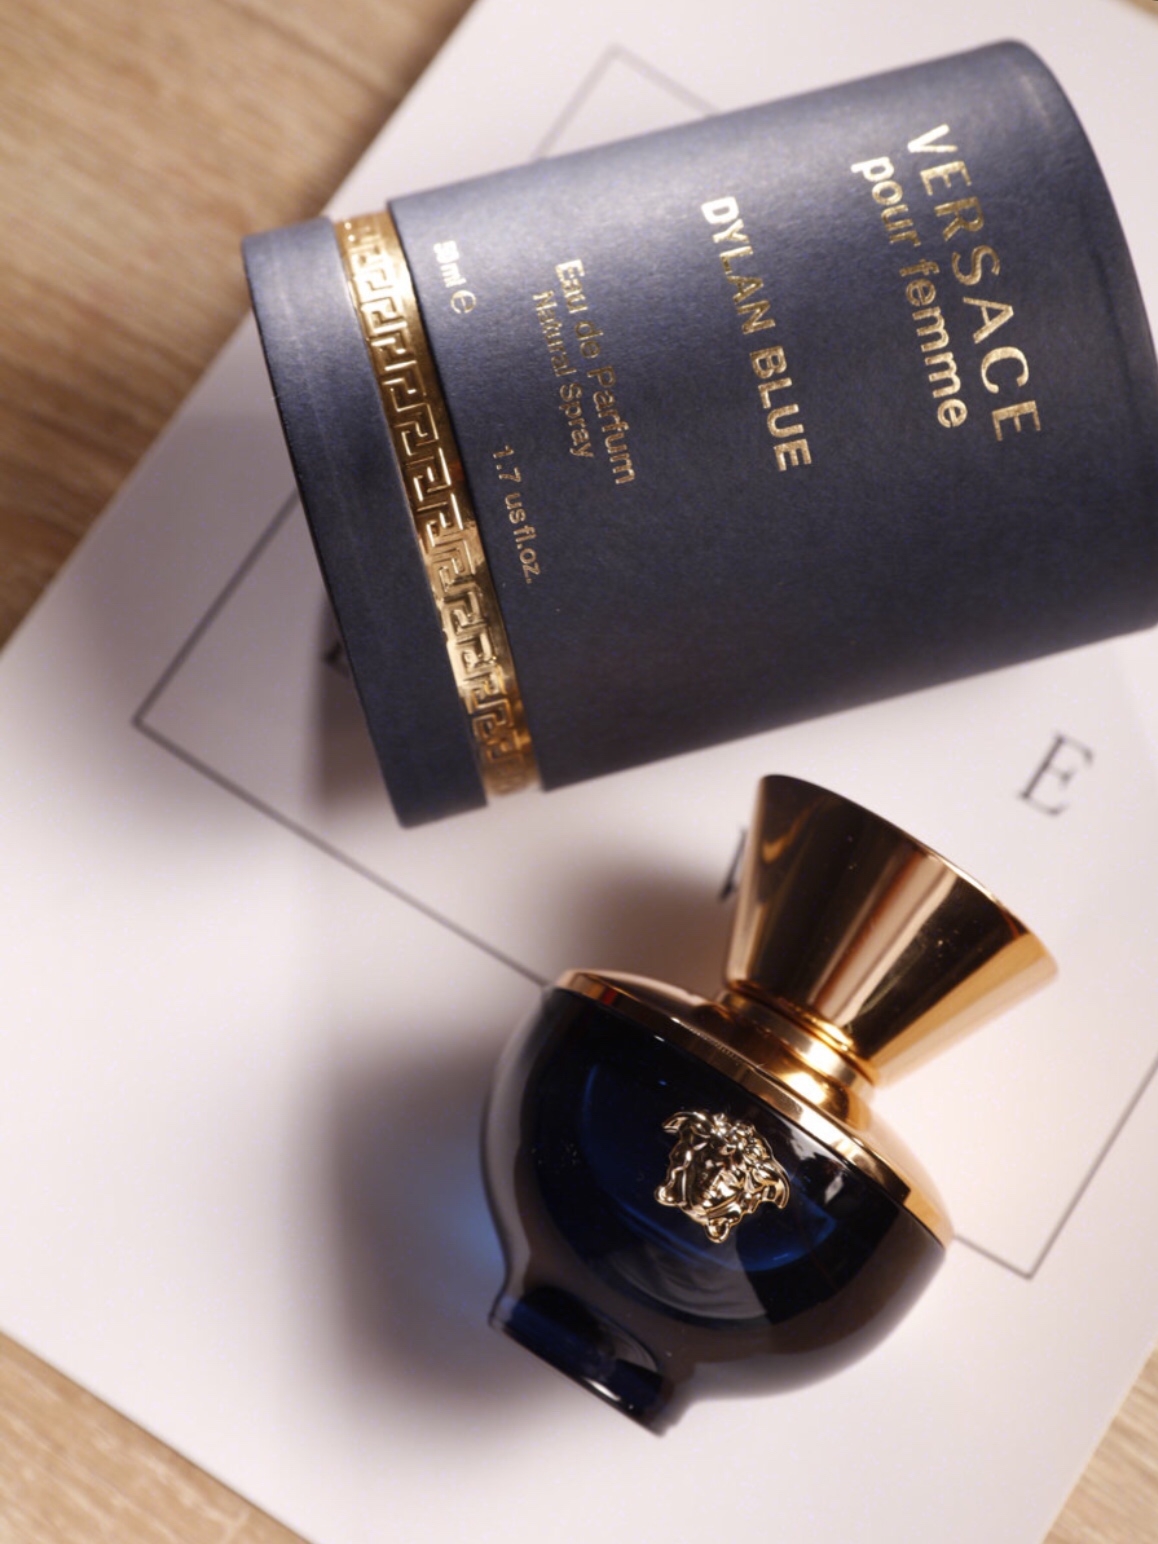 范思哲 迪伦男士 Versace Dylan Blue Pour Homme|香水评论|香调|价格|味道|香评|评价|-香水时代NoseTime.com